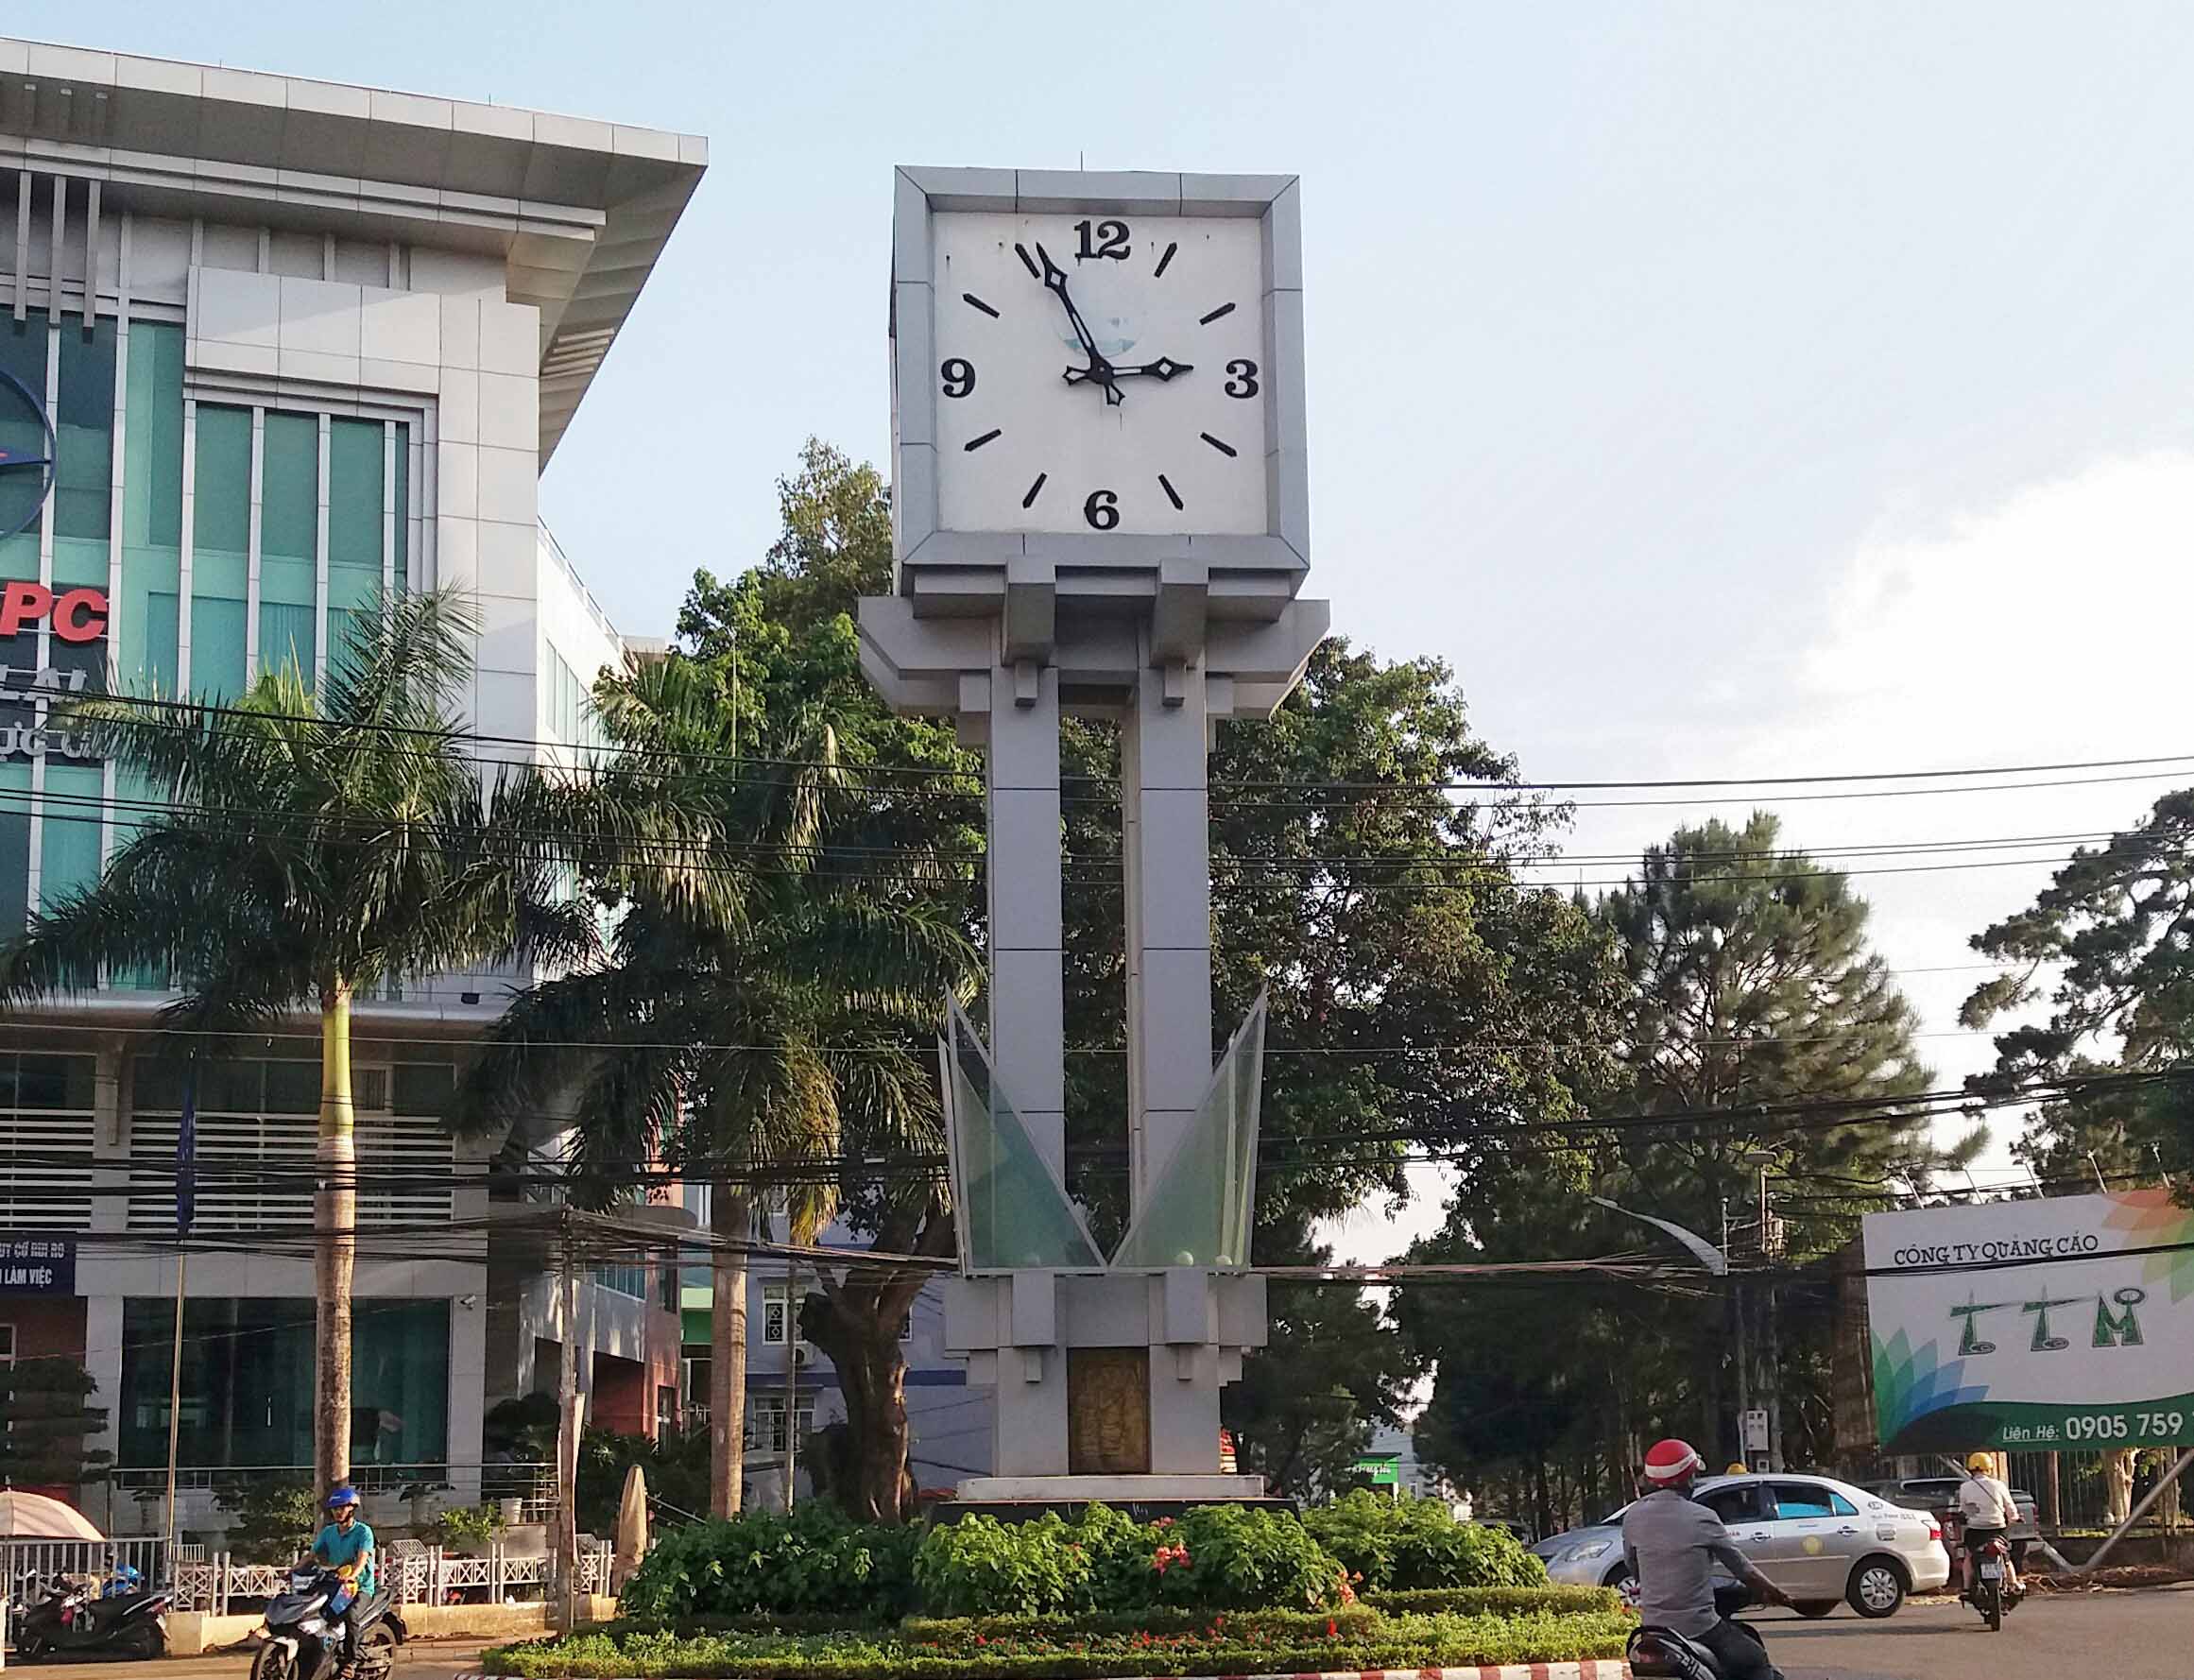 Chiếc đồng hồ lớn, 4 mặt được đặt ở vị trí trung tâm thành phố hiện không hoạt động. Ảnh: Như Nguyện